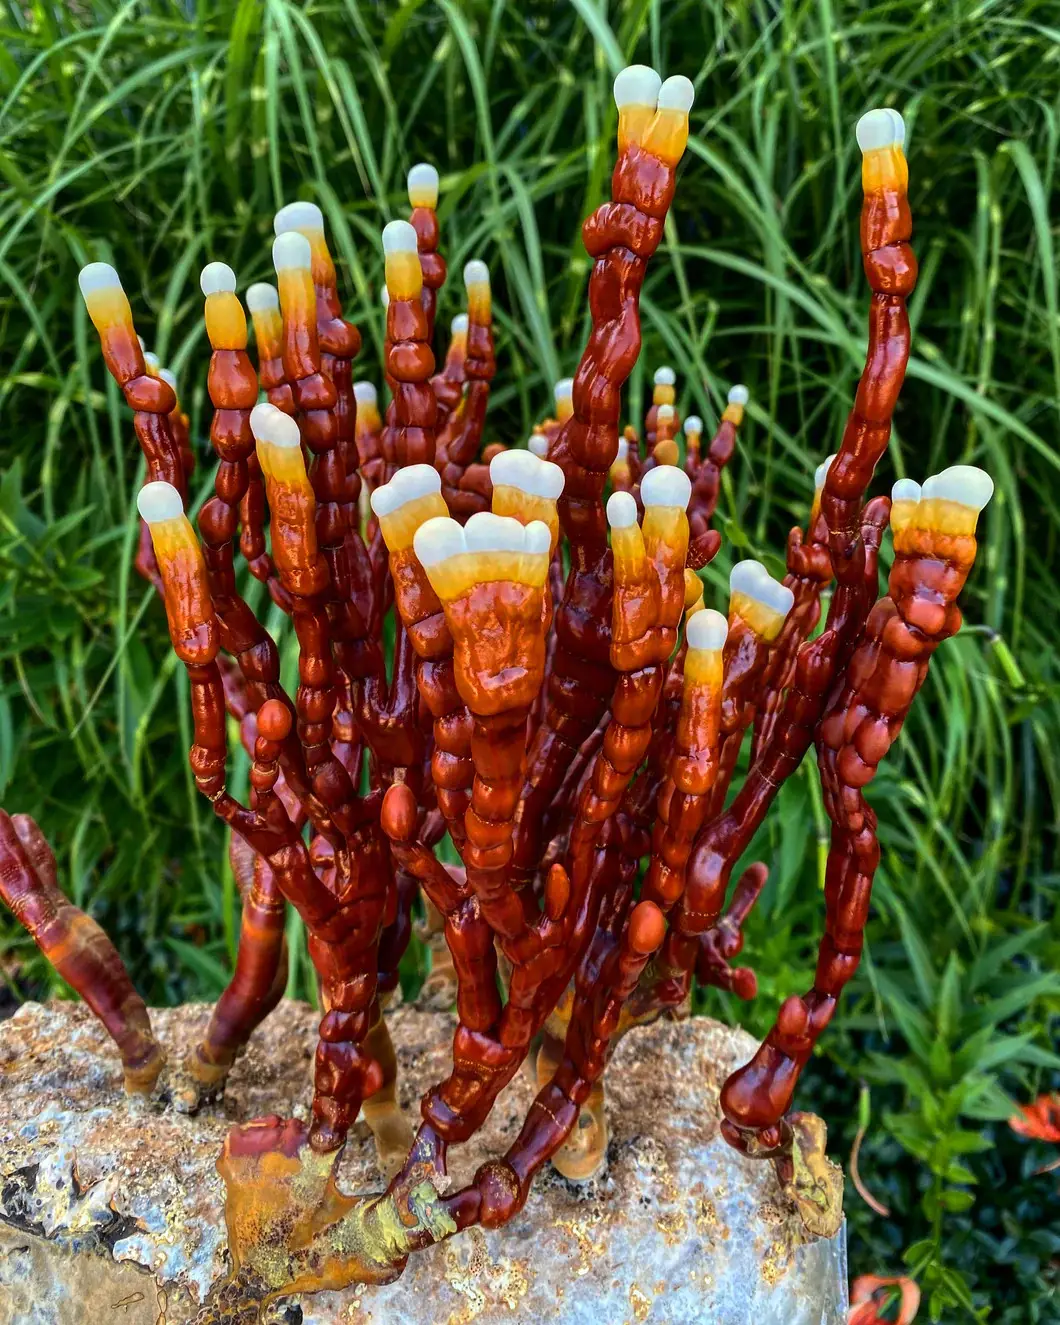 Corne de cerf en poudre champignons reishi de fraîcheur rare haute valeur nutritionnelle corne de cerf en forme de ganoderma lucidum